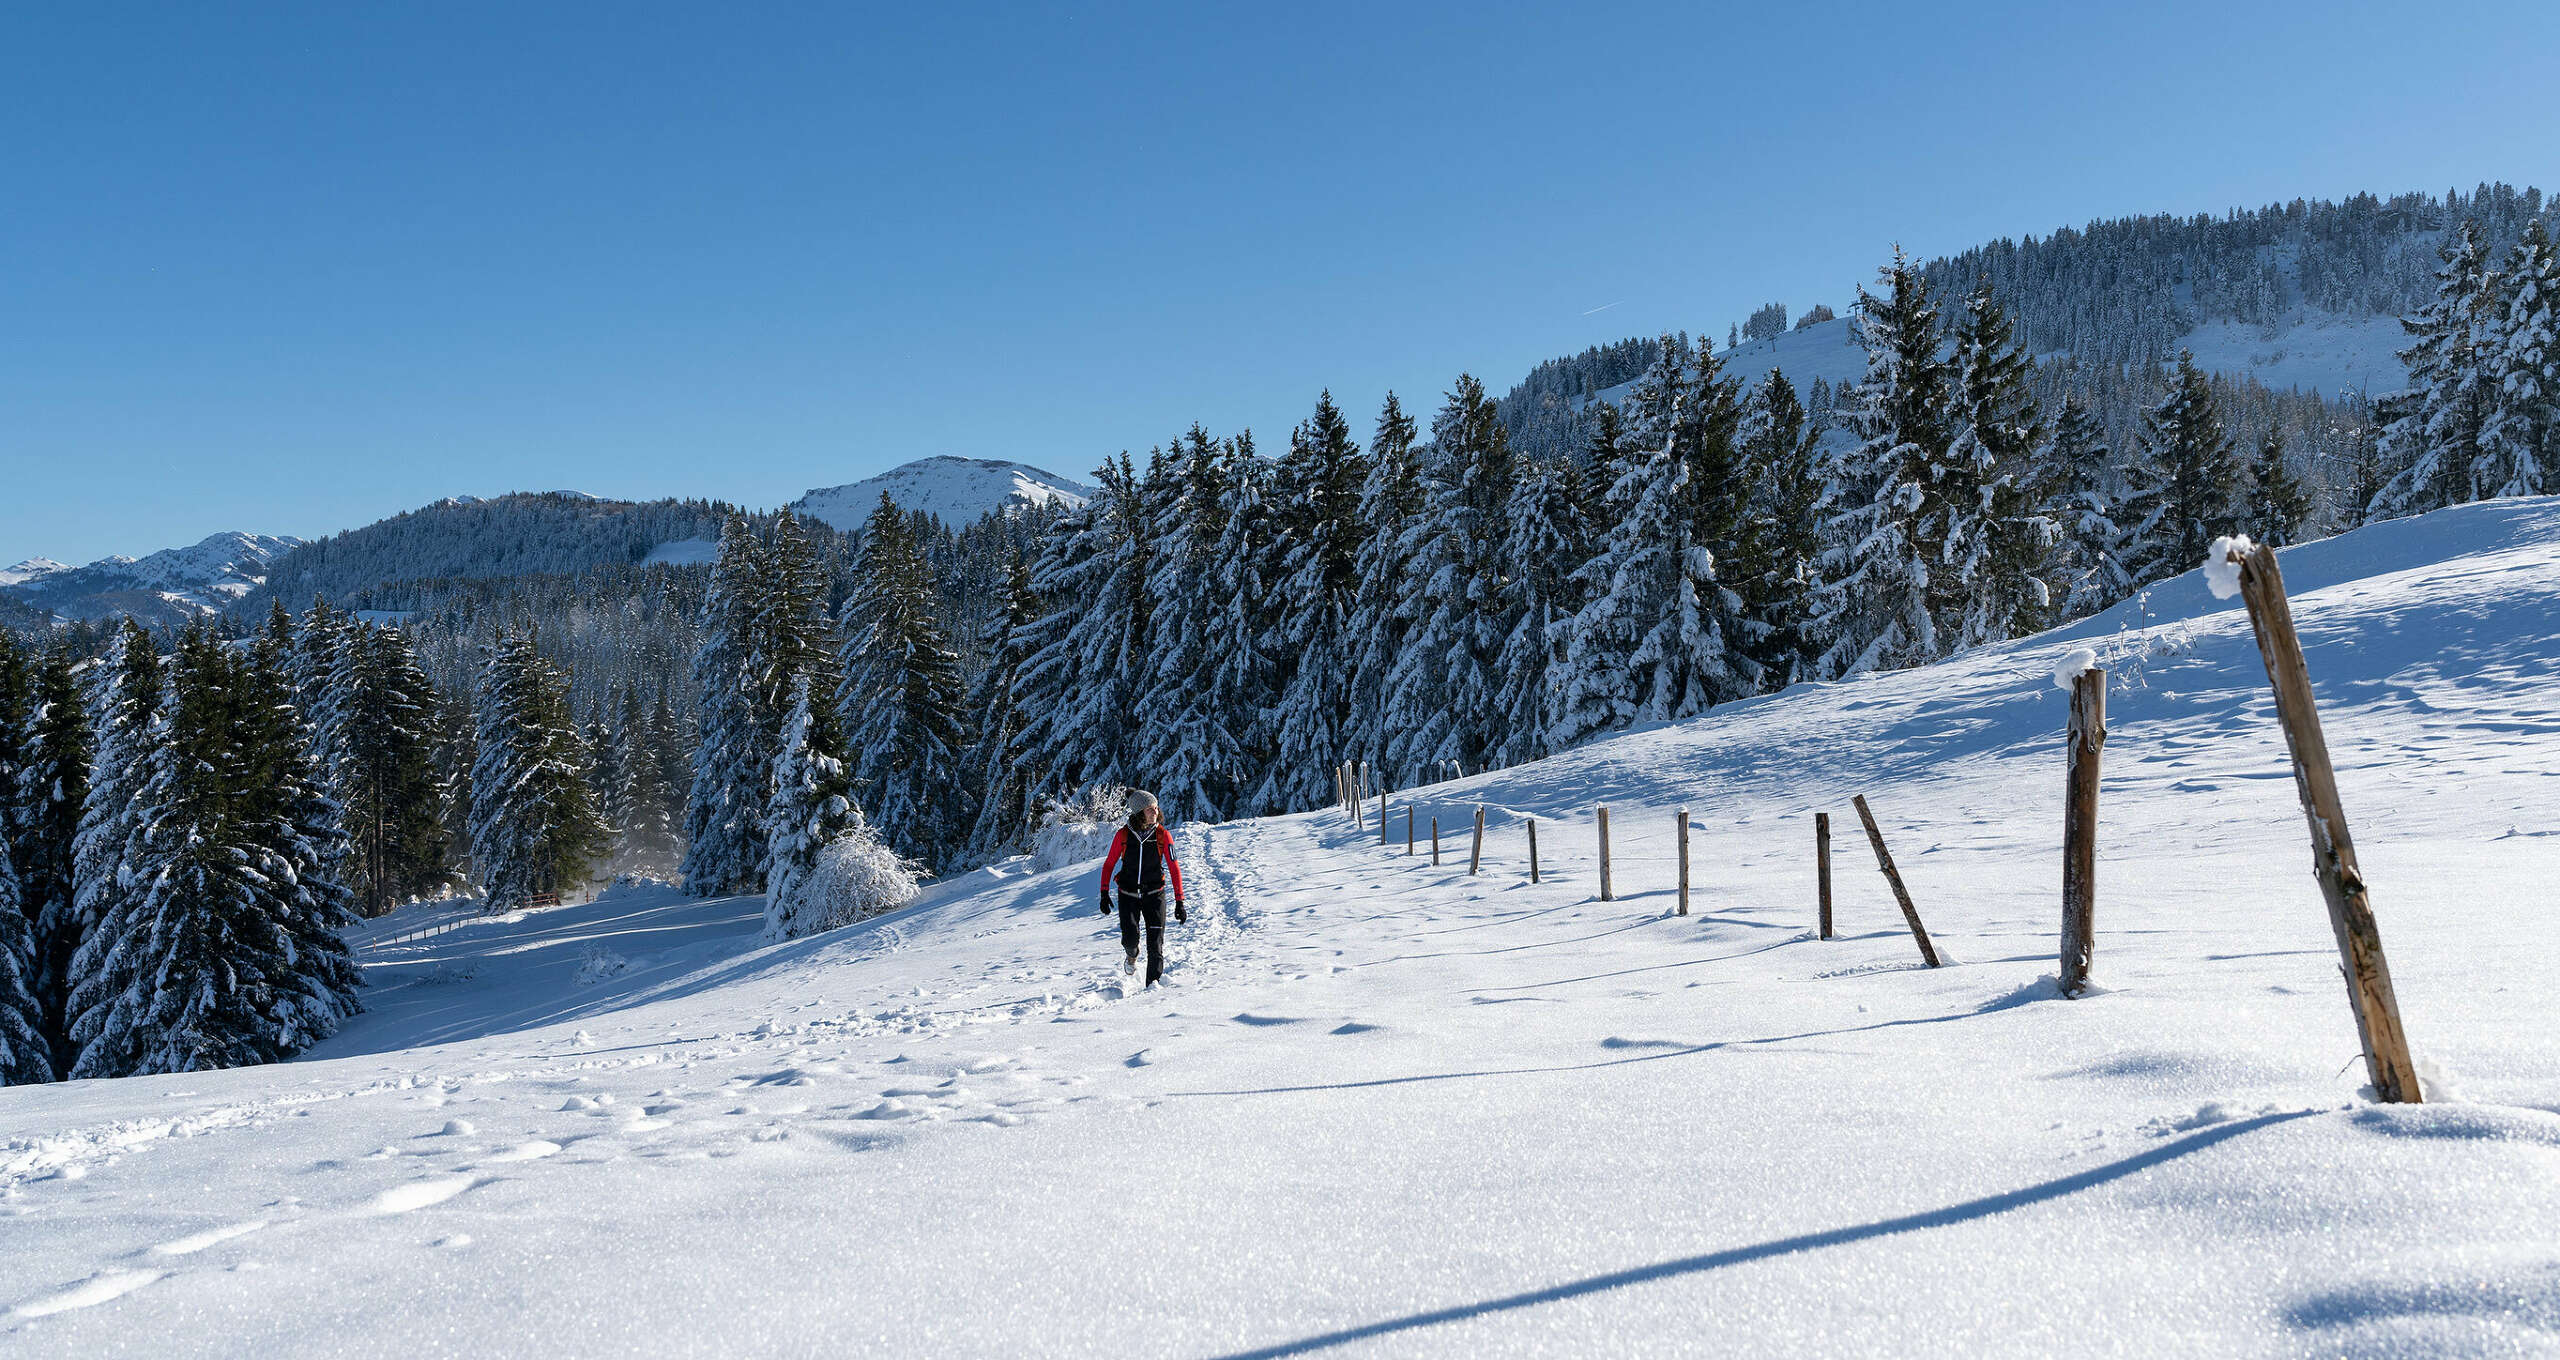 Beim Wandern im Winter im Allgäu die Berge von Oberstaufen erleben. Verschneite Landschaften und weiße Gipfel locken in die Natur. Bei Winterwanderungen erlebt man die schönsten Seiten des Allgäuer Winters.